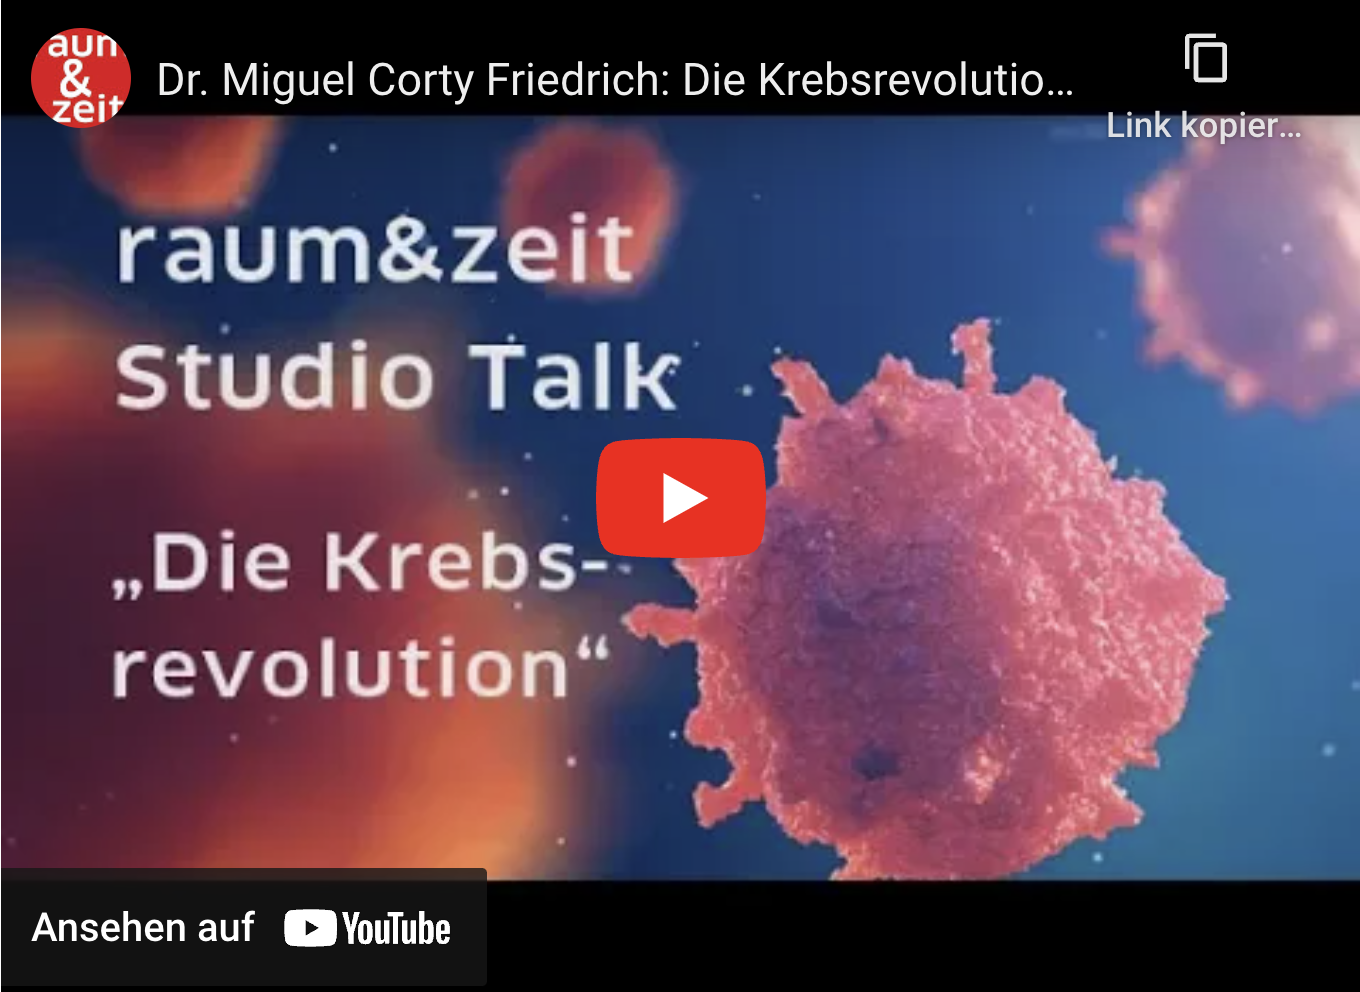 raum&zeit Studio Talk mit Dr. Miguel Corty Friedrich: Die Krebsrevolution